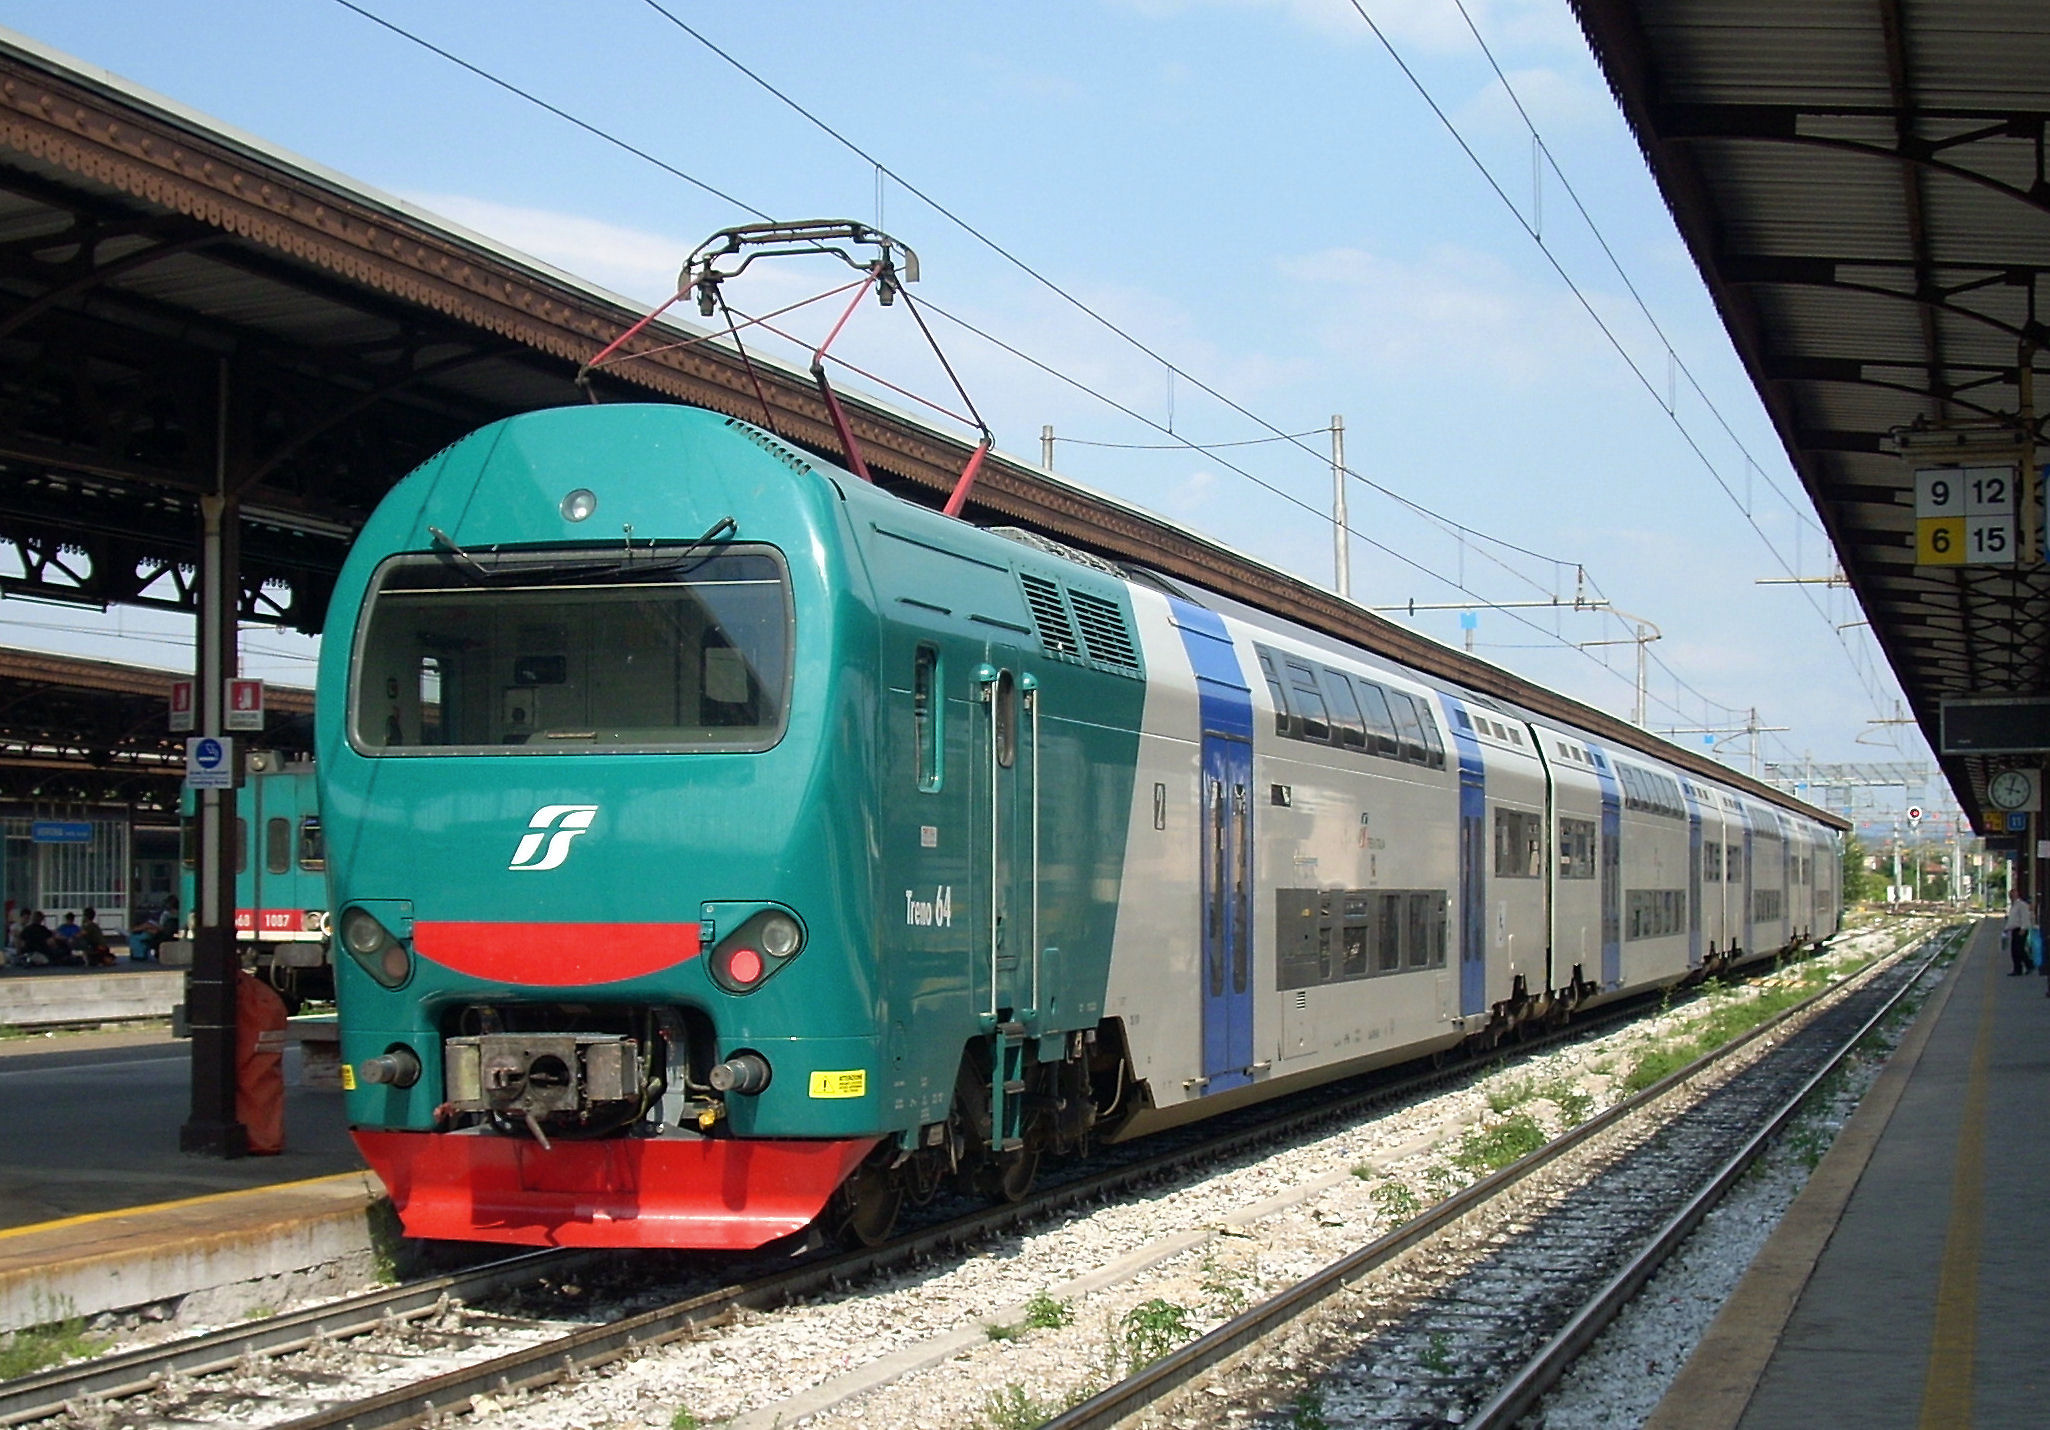 Sicurezza ed efficienza del trasporto ferroviario diventino priorità per la Regione